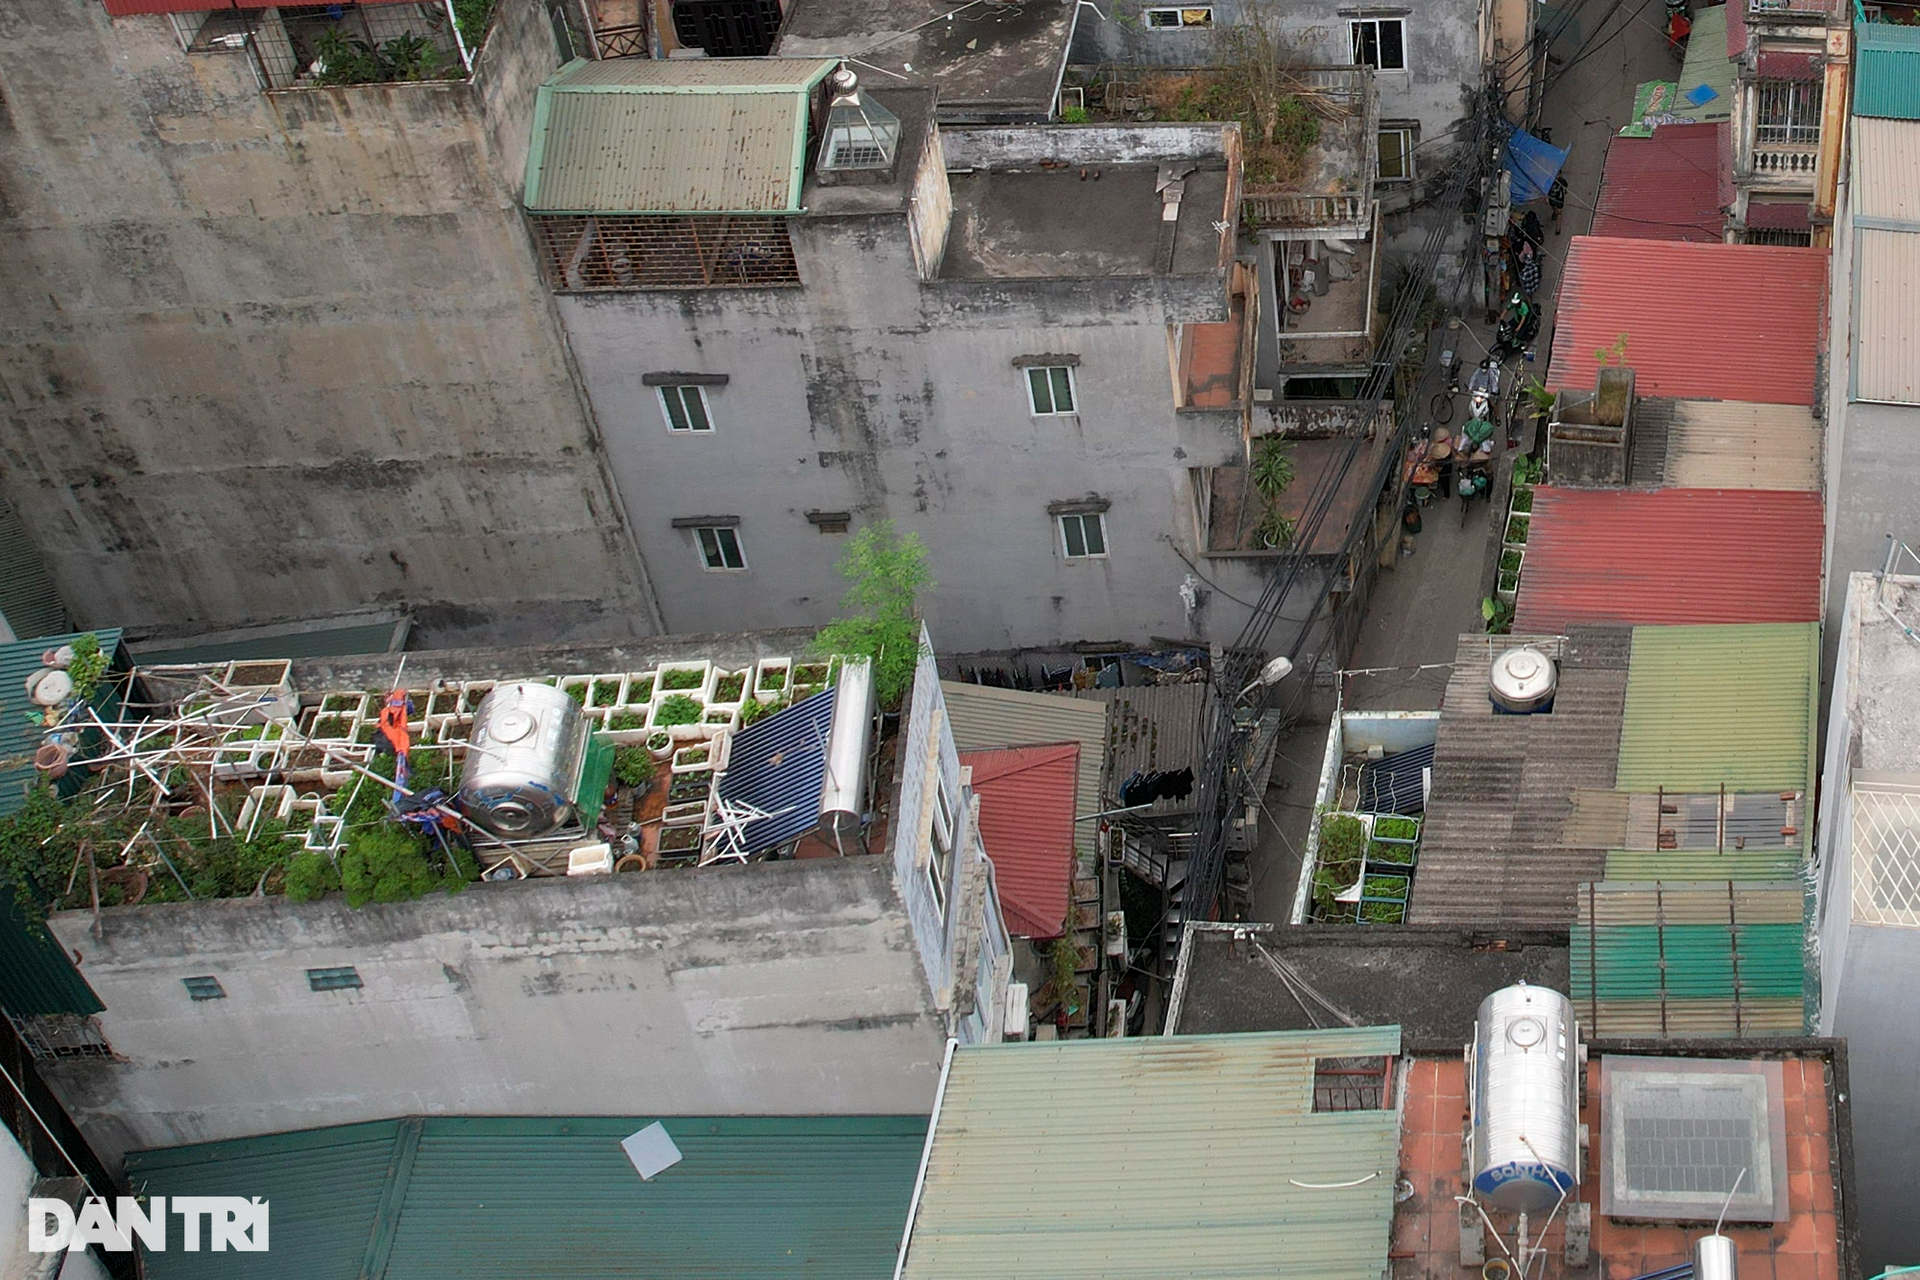 Nhà cửa dày đặc không còn khoảng trống khi nhìn đô thị Hà Nội từ trên cao